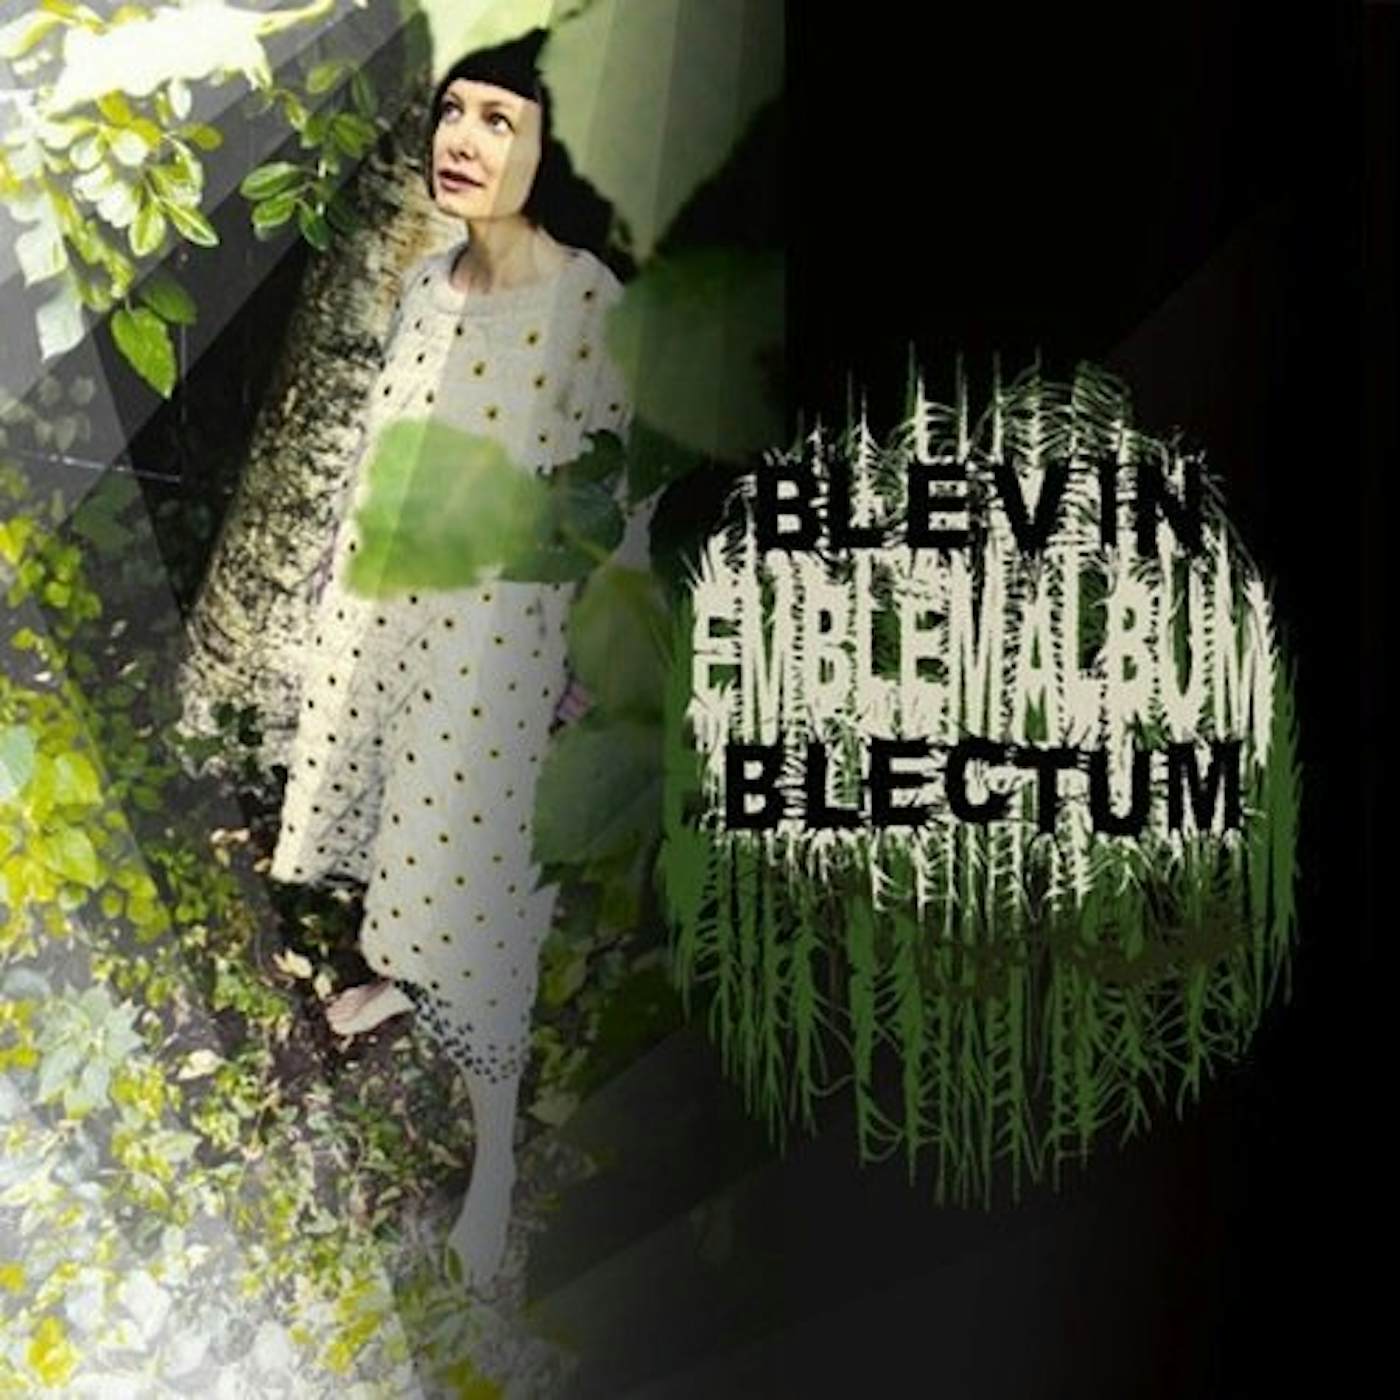 Blevin Blectum Emblem Album Vinyl Record